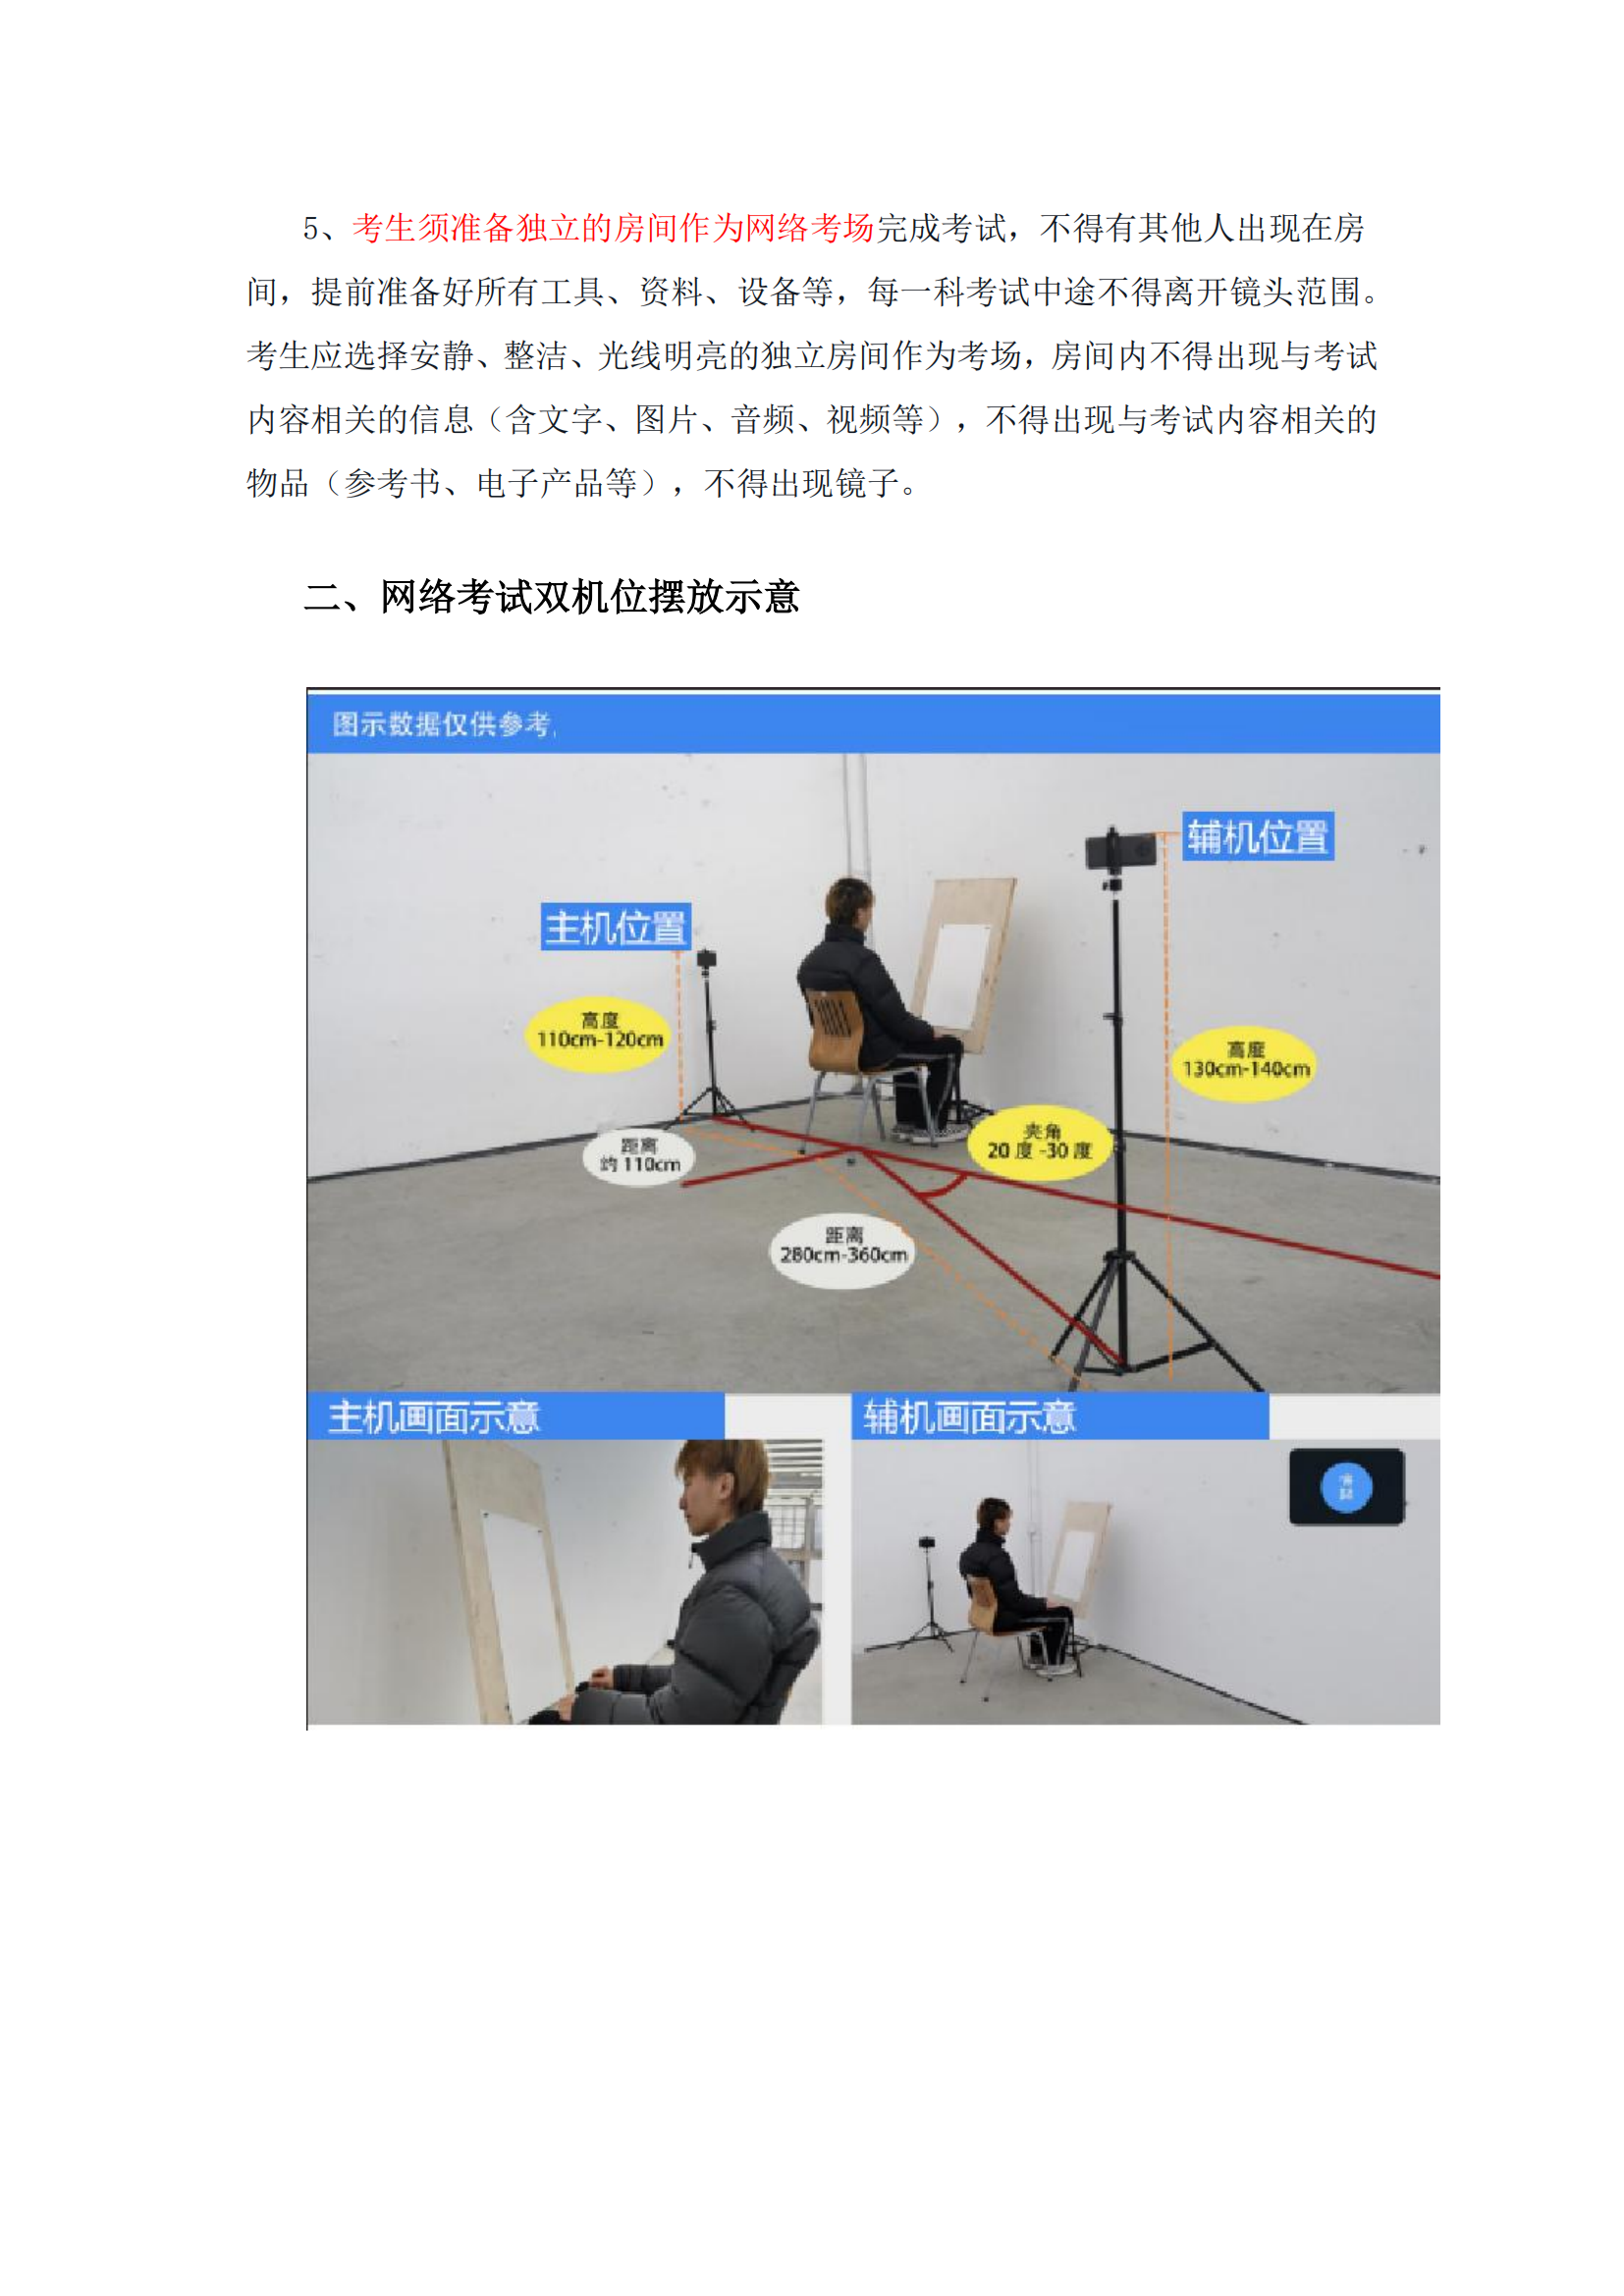 附件1：广州美术学院艺术升APP网络考试操作说明_01.png